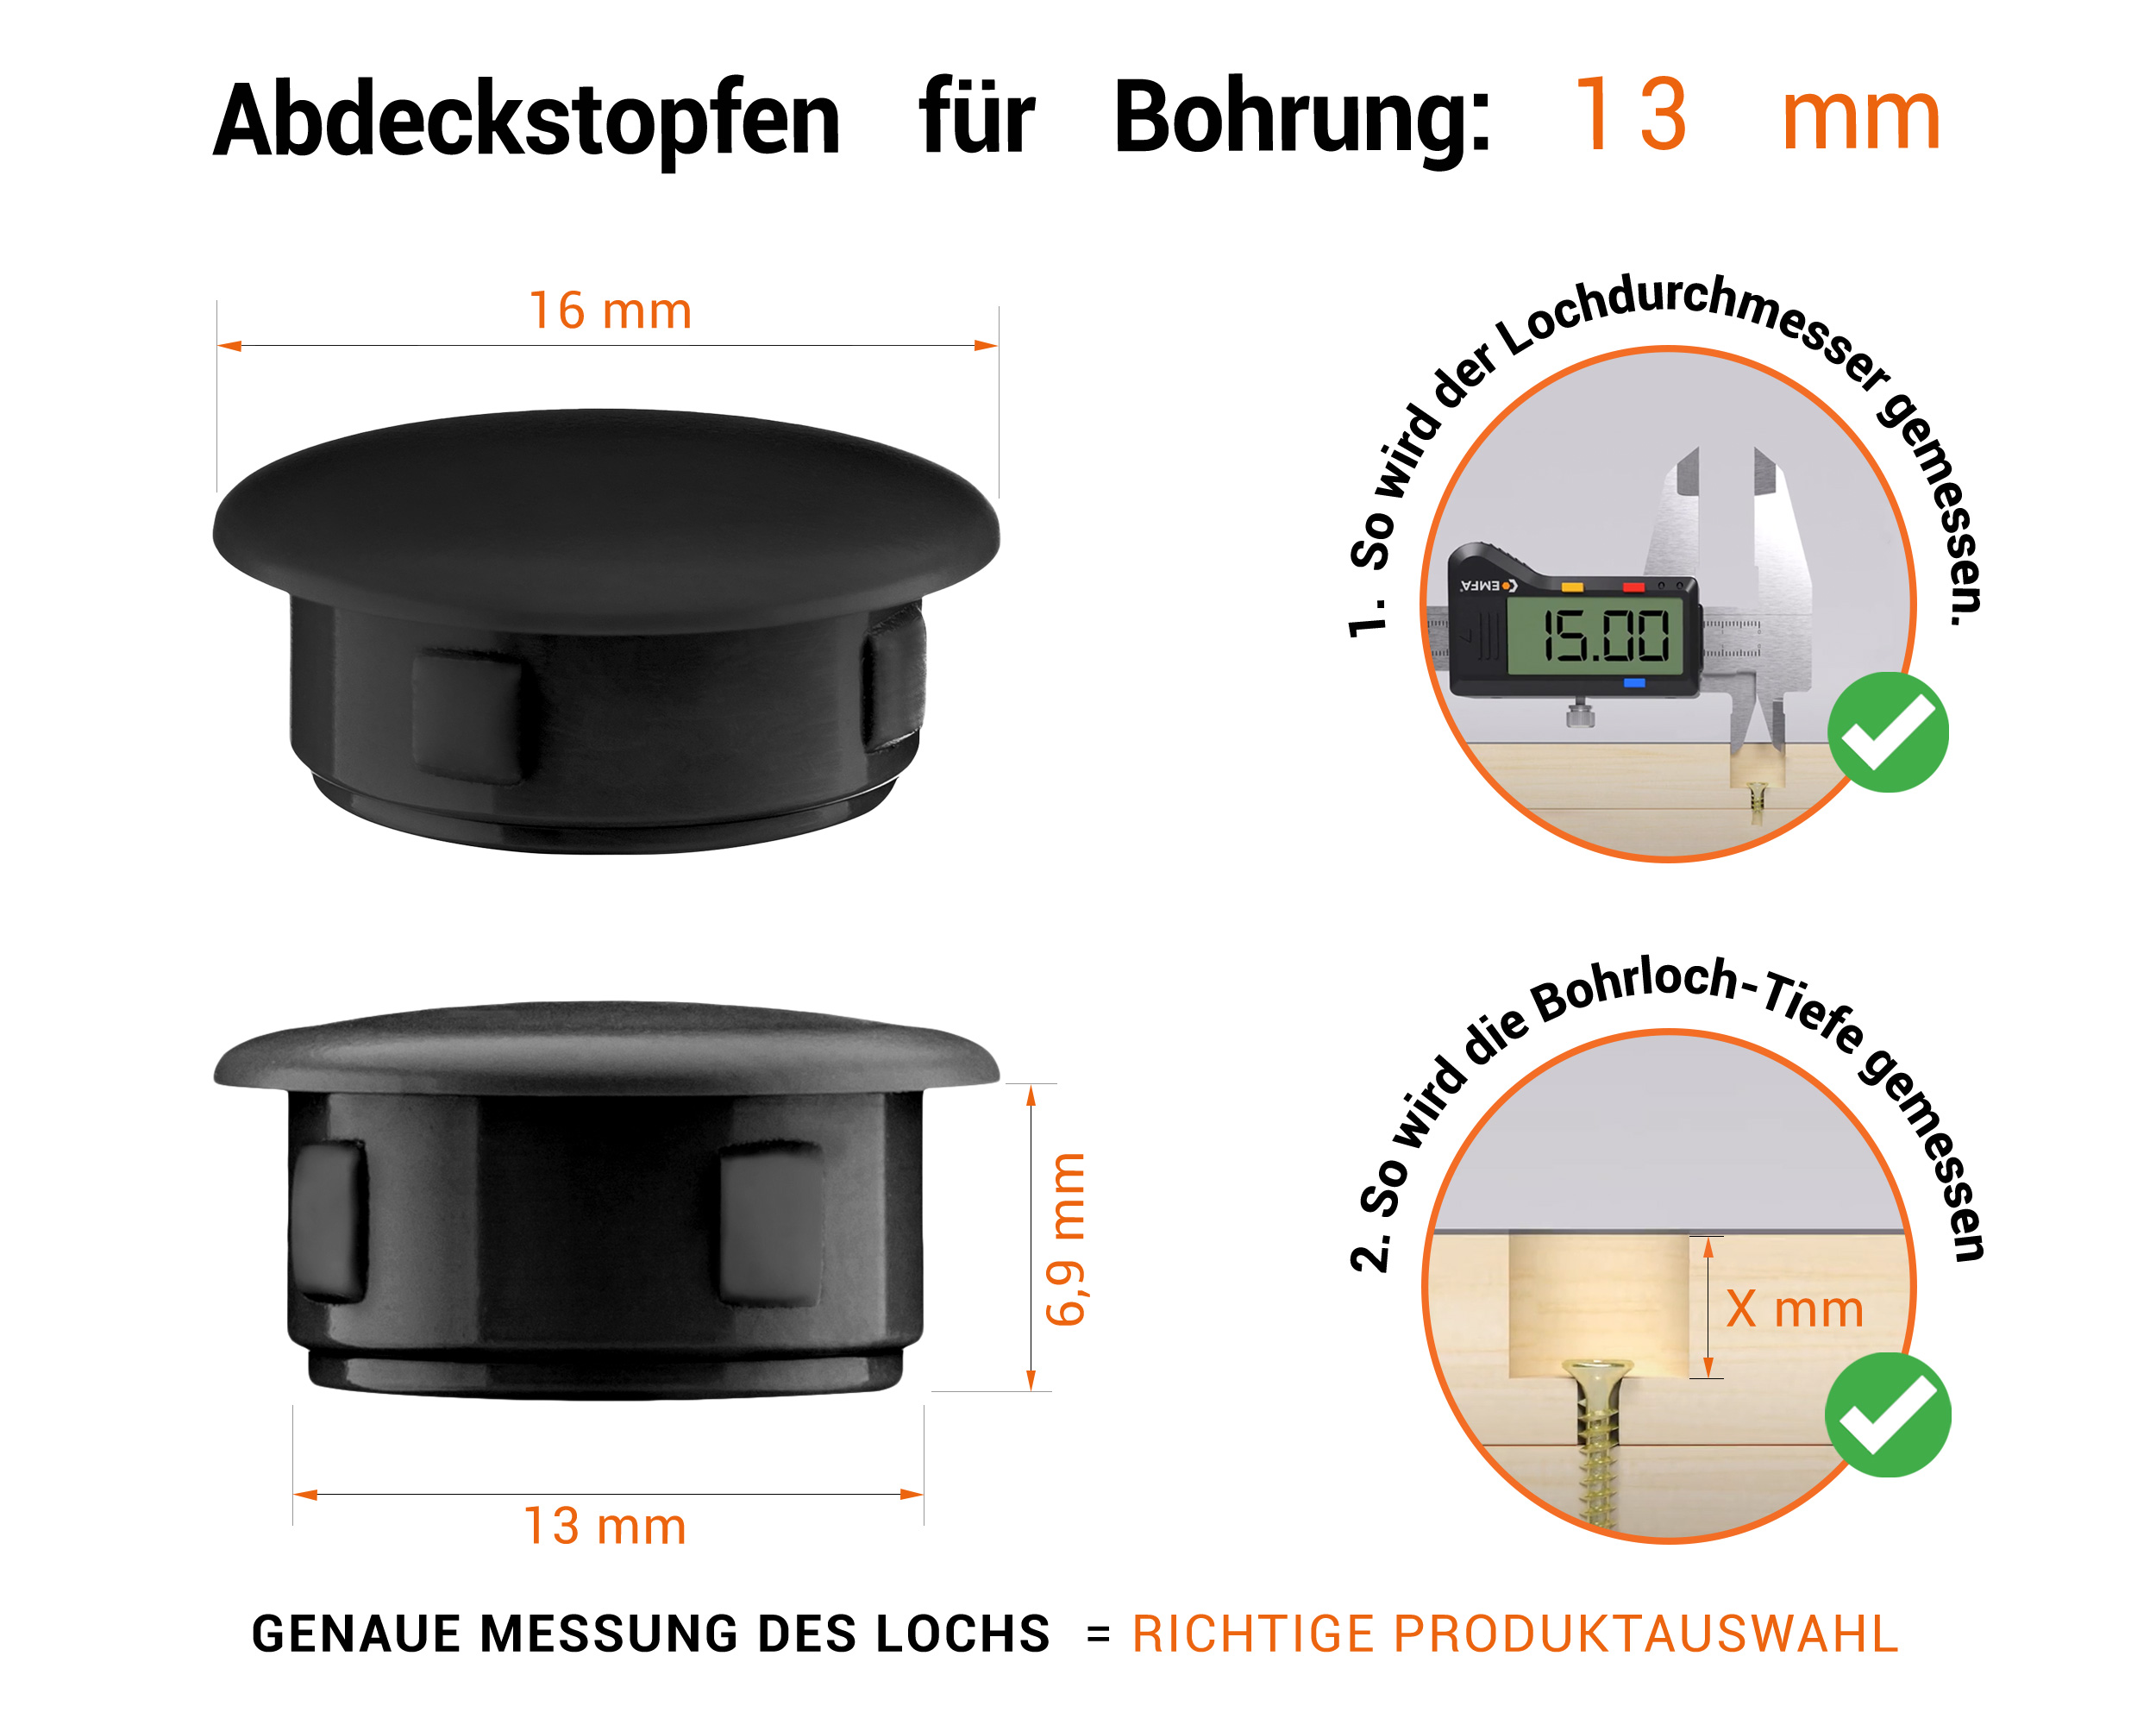 Schwarze Blindstopfen aus Kunststoff für Bohrung 13 mmmm mit technischen Abmessungen und Anleitung für korrekte Messung